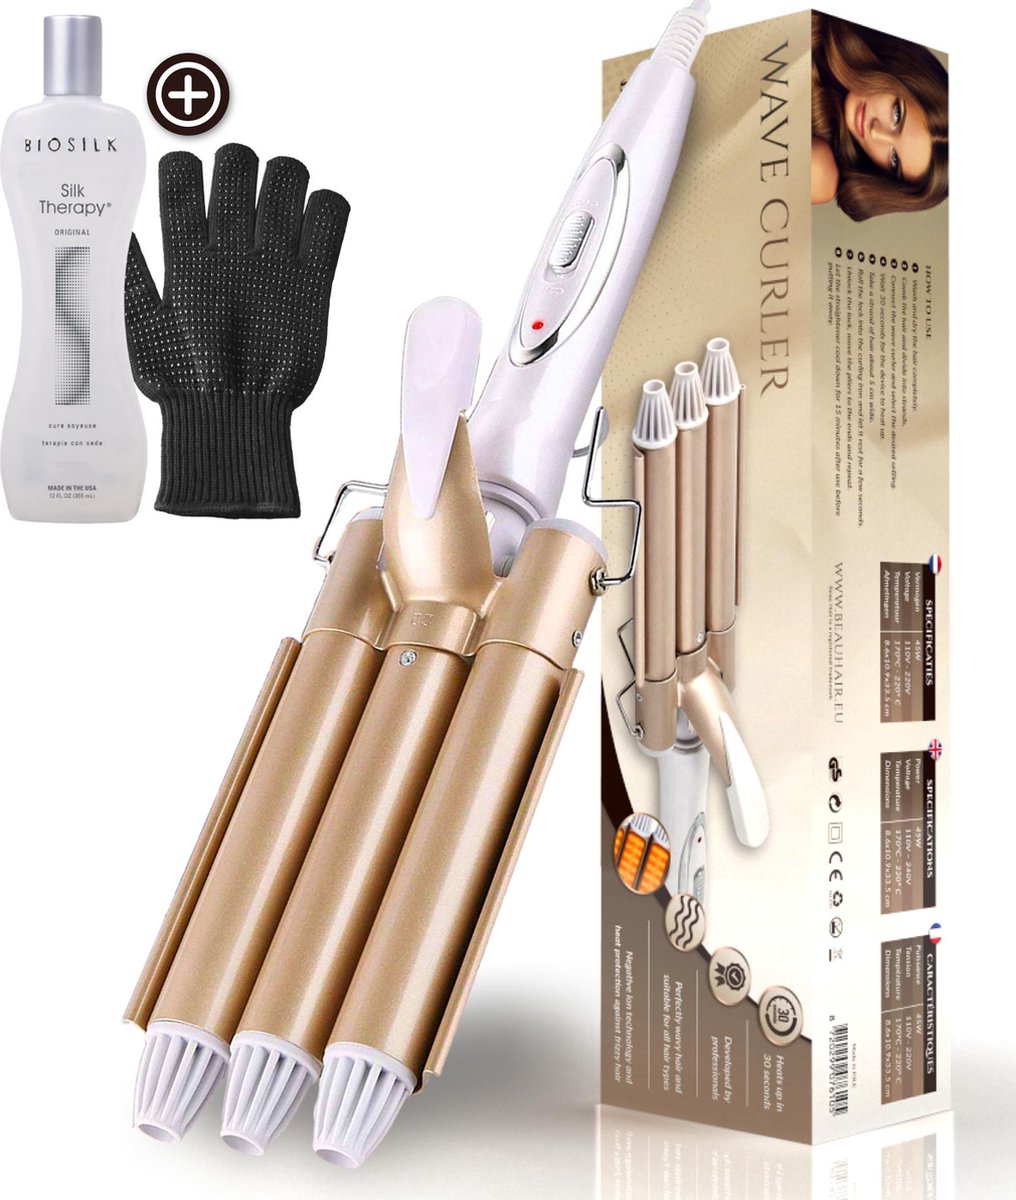 Beau Hair Golvenkrultang - Wafeltang - Automatische Krultang - Inclusief Biosilk Silk Therapy en handschoen - BeauHair